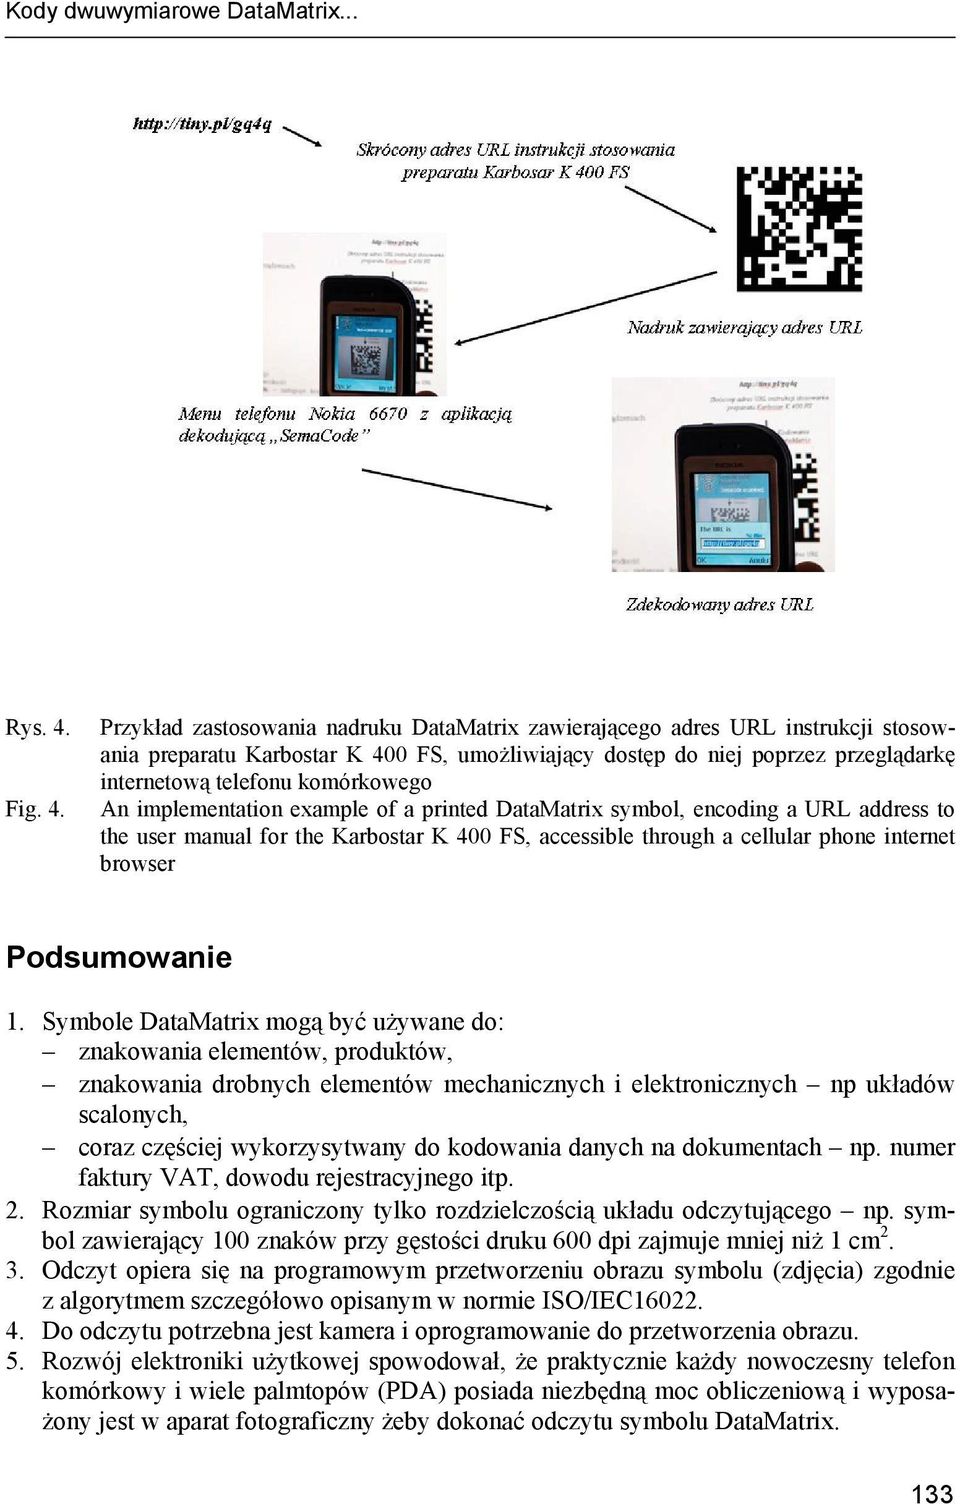 Przykład zastosowania nadruku DataMatrix zawierającego adres URL instrukcji stosowania preparatu Karbostar K 400 FS, umożliwiający dostęp do niej poprzez przeglądarkę internetową telefonu komórkowego